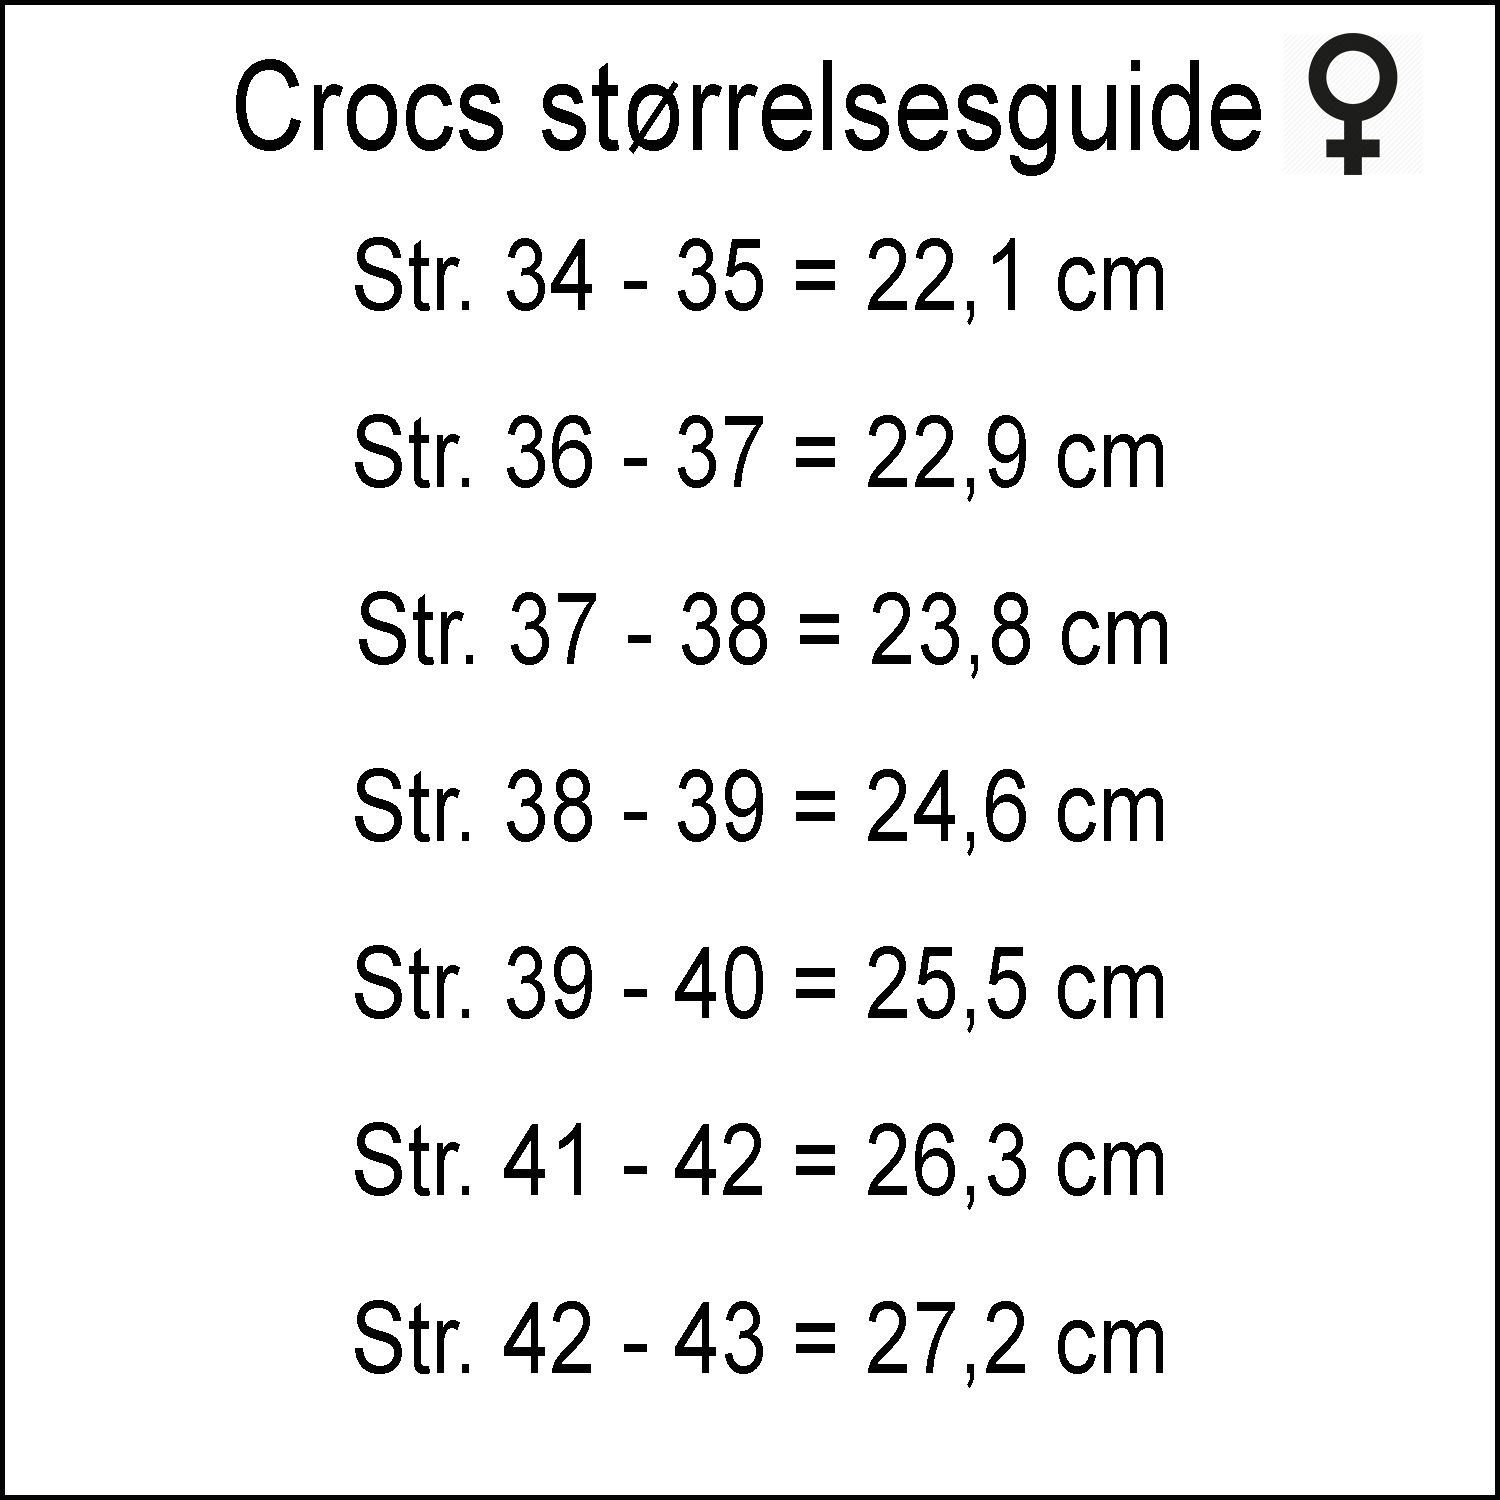 automatisk Eastern kontoførende Crocs størrelsesguide - Sygeplejebutikken